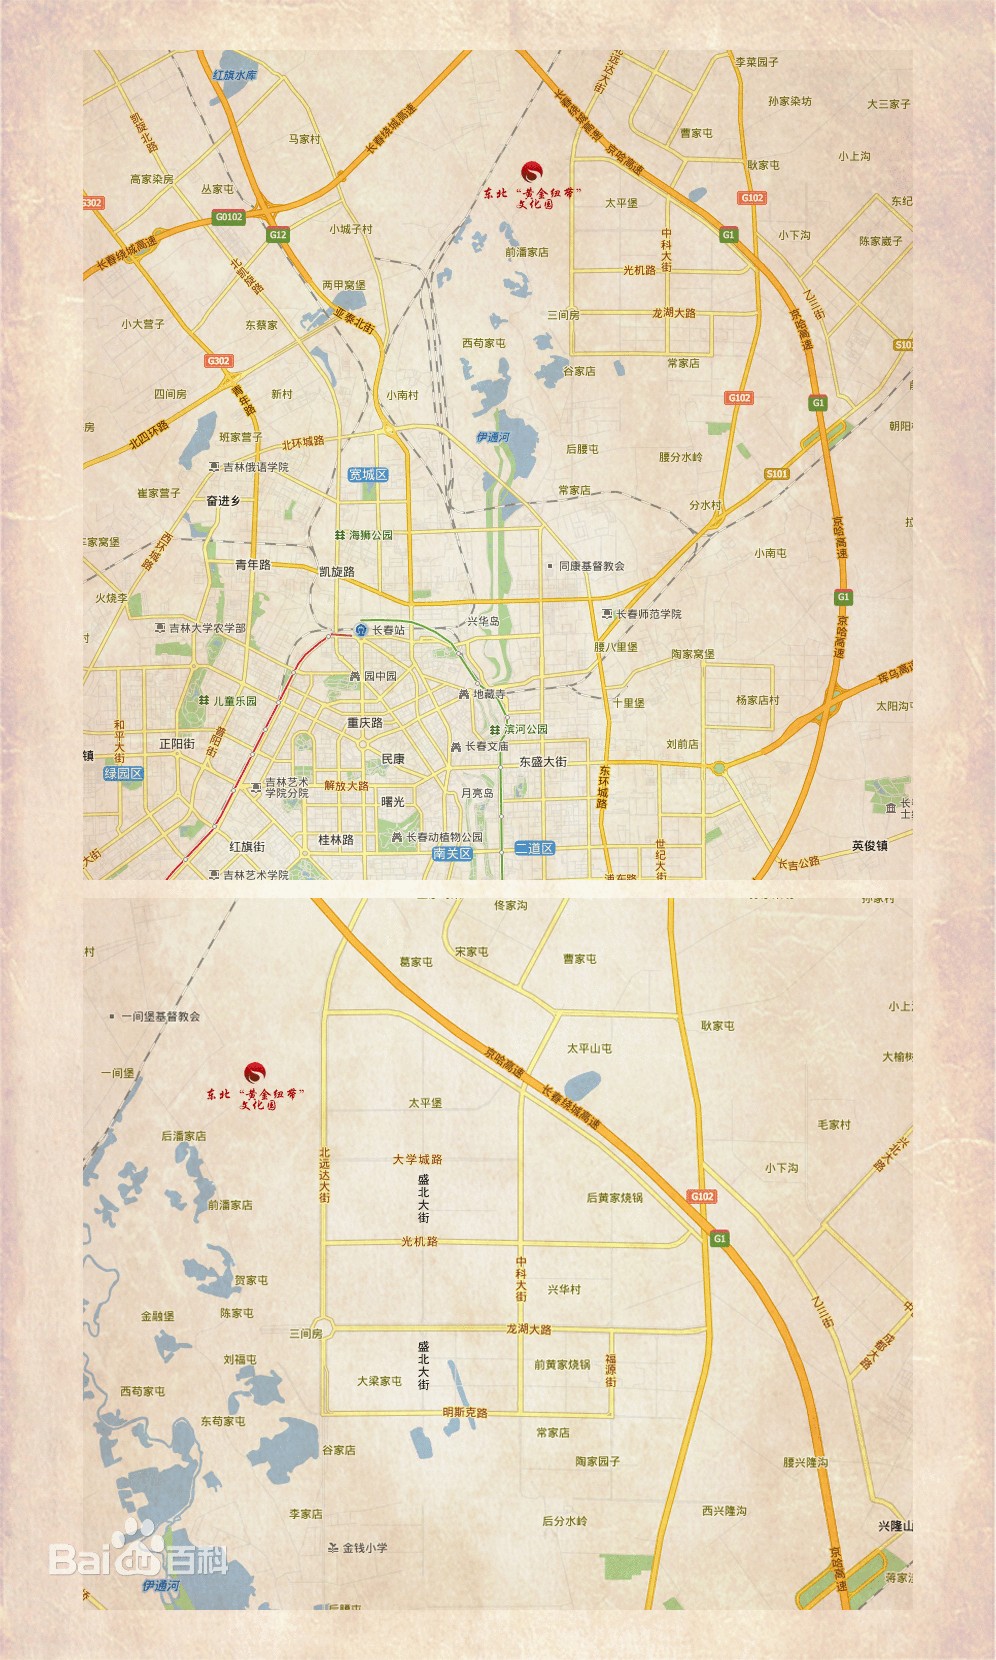 東北亞黃金紐帶文化園周邊地圖